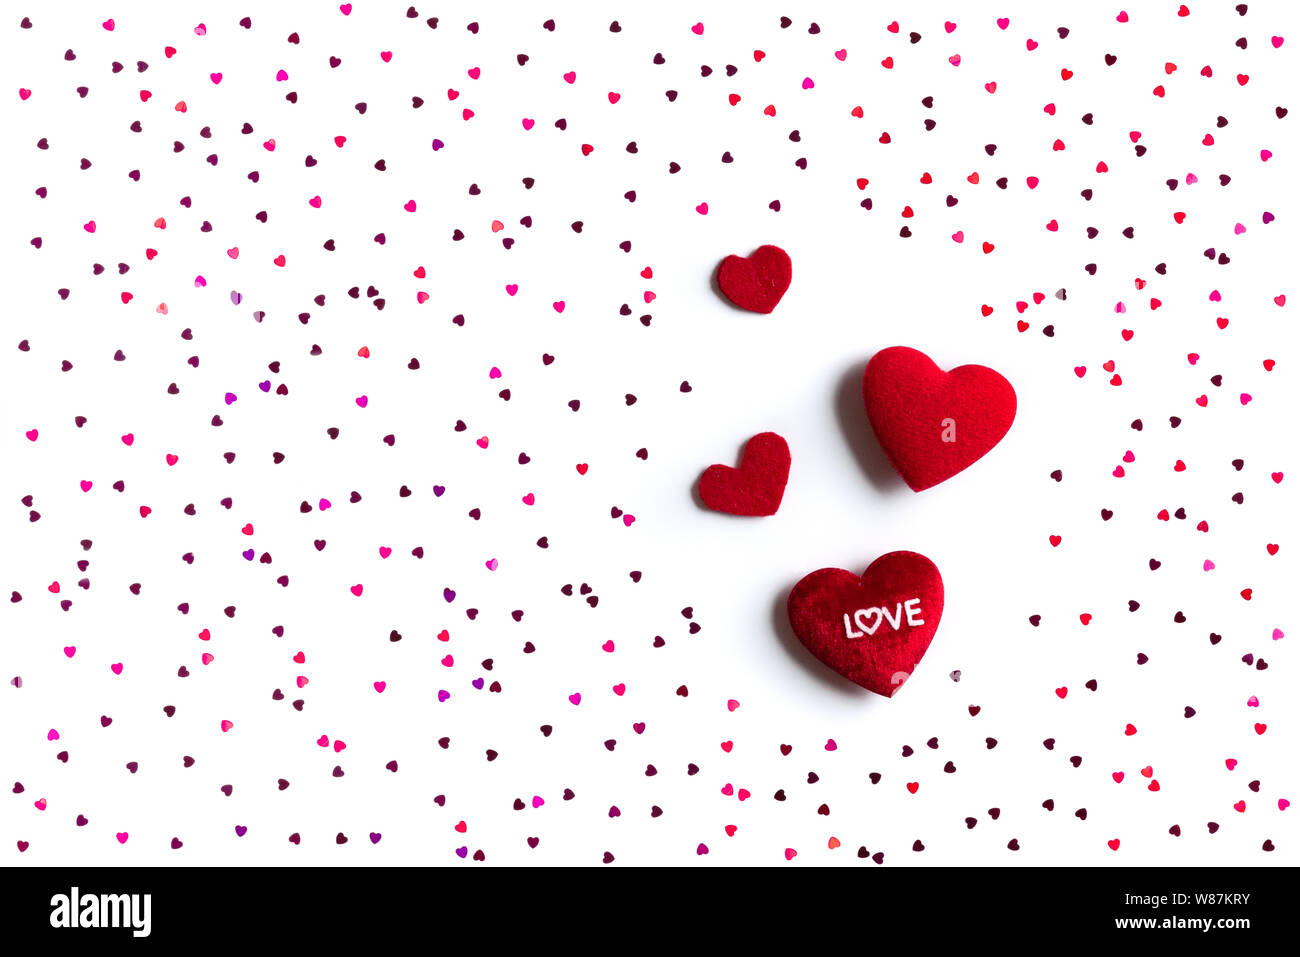 Fondos De San Valentin El Día de San Valentín concepto, fondo blanco con corazones rojos con amor  Fotografía de stock - Alamy